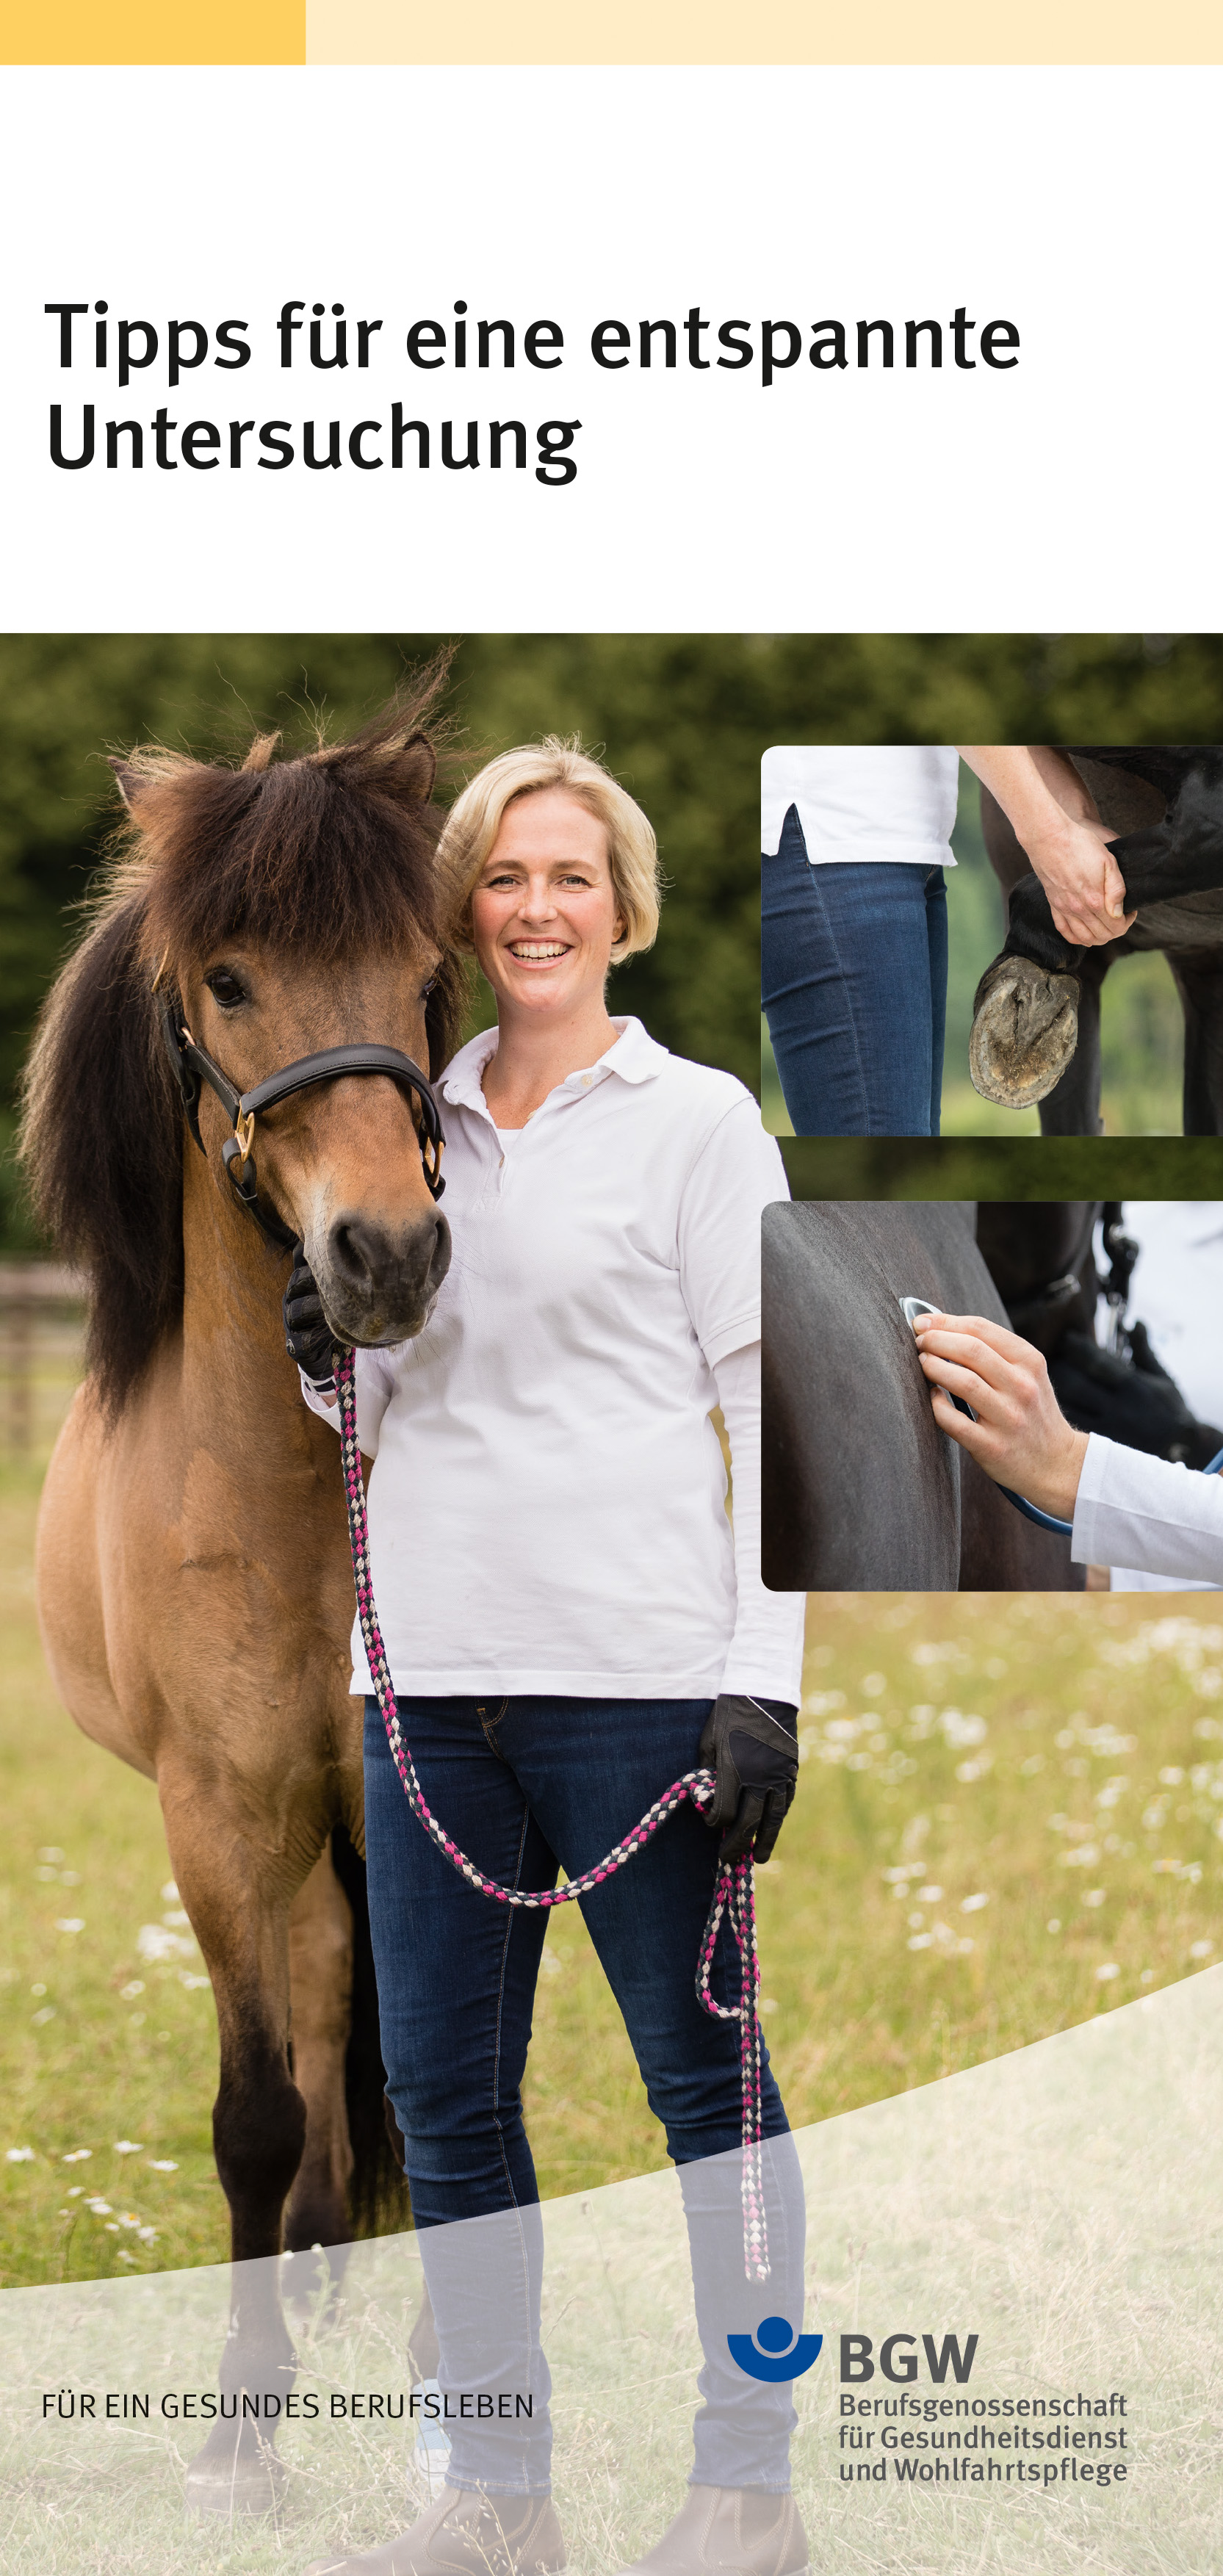 Titel: Tipps für eine entspannte Untersuchung - Bildcollage: Tierärztin neben Pferd, Hand hält Huf, Hand hält Bruststück eines Stethoskop auf den Pferdebauch